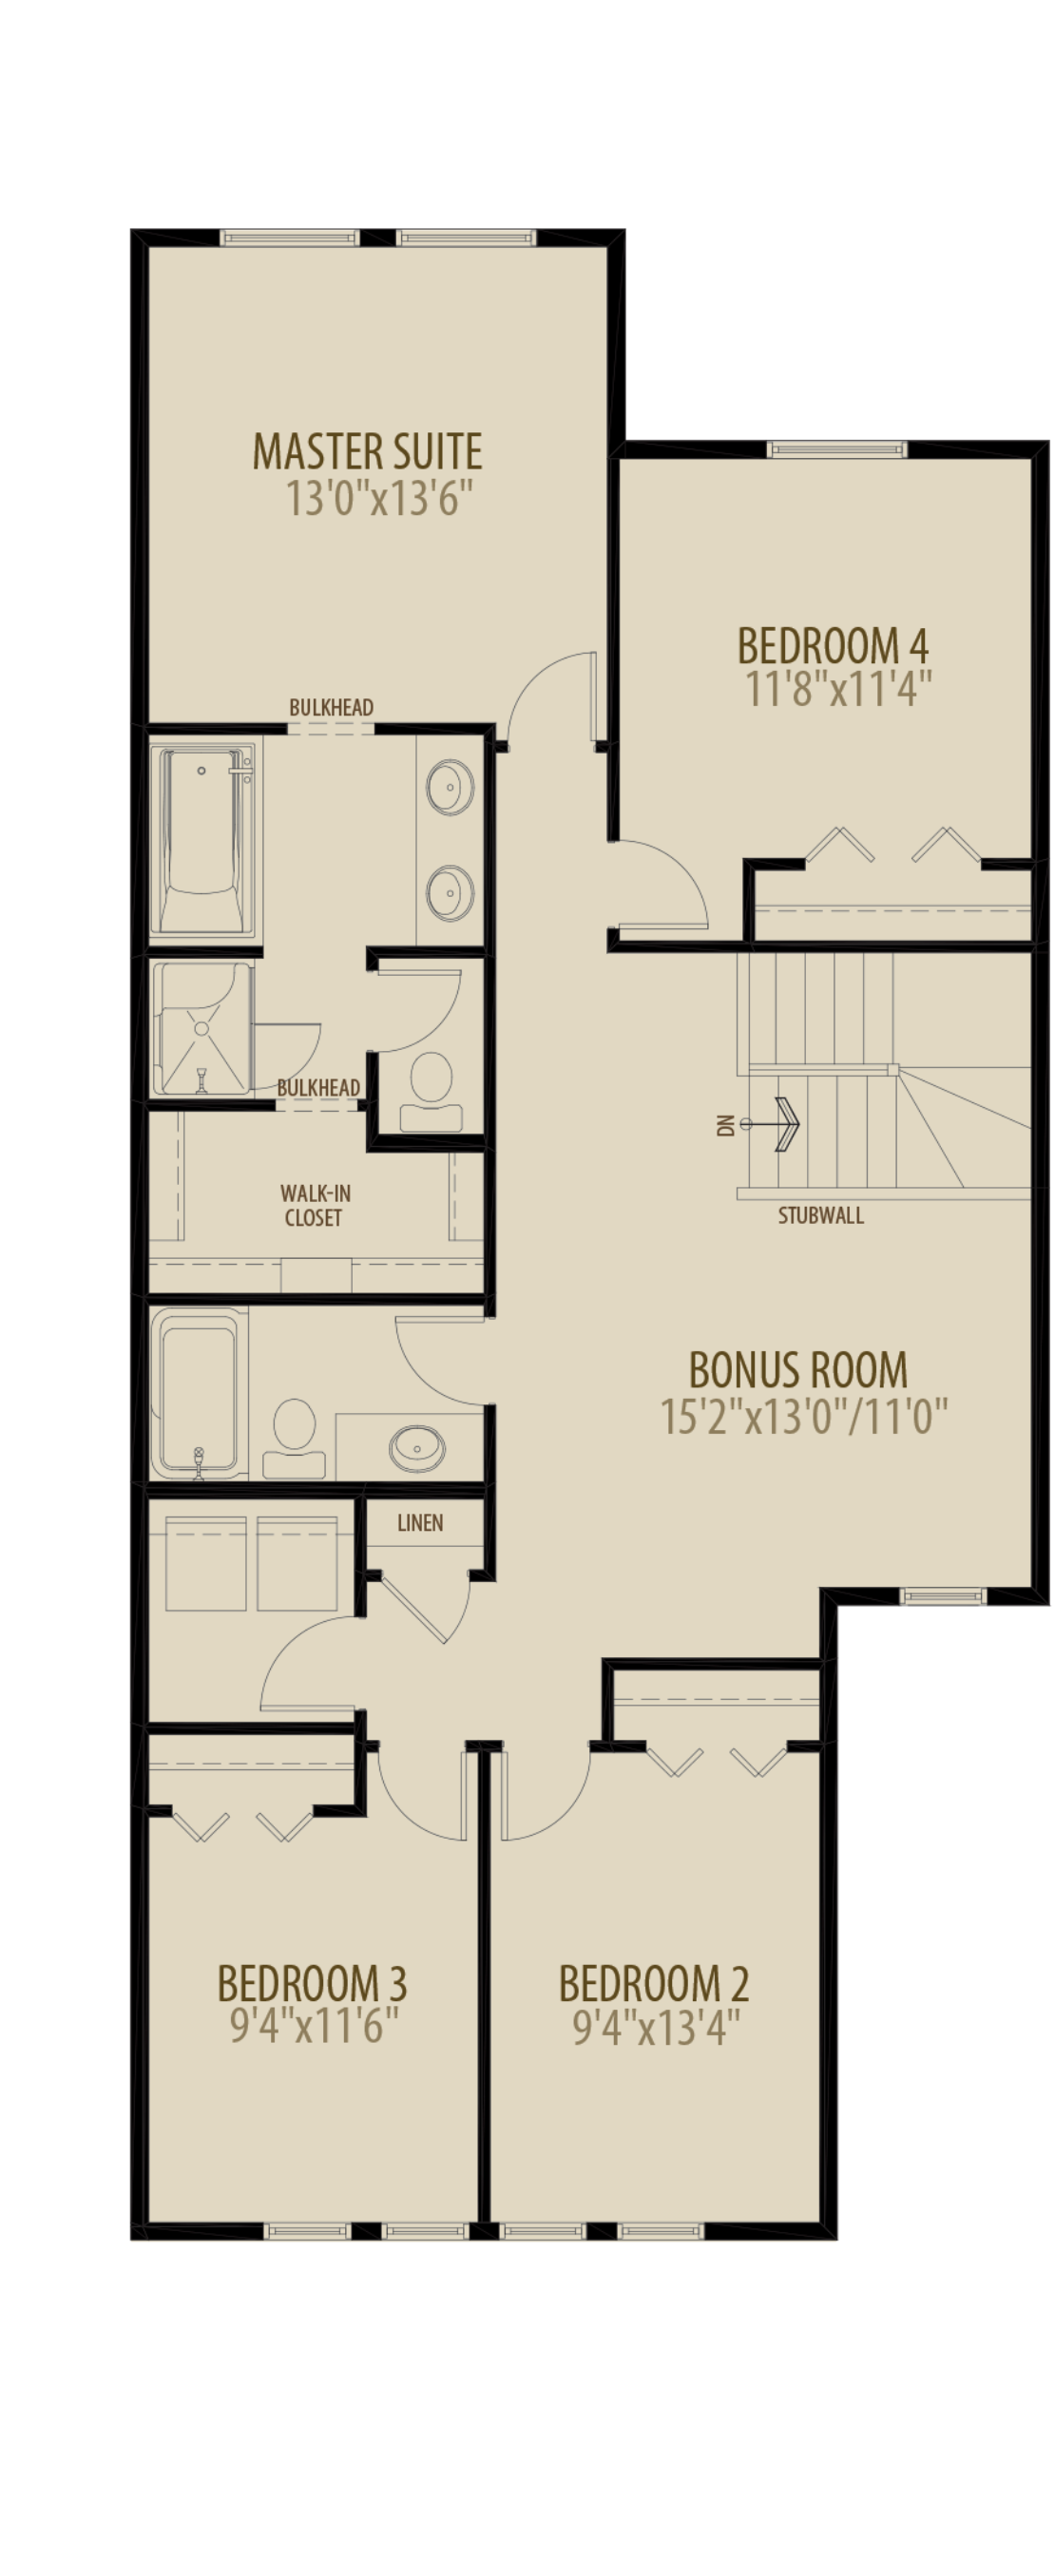 4th Bedroom Bonus Room Adds 104 sq ft (Standard Plan for Livingston)